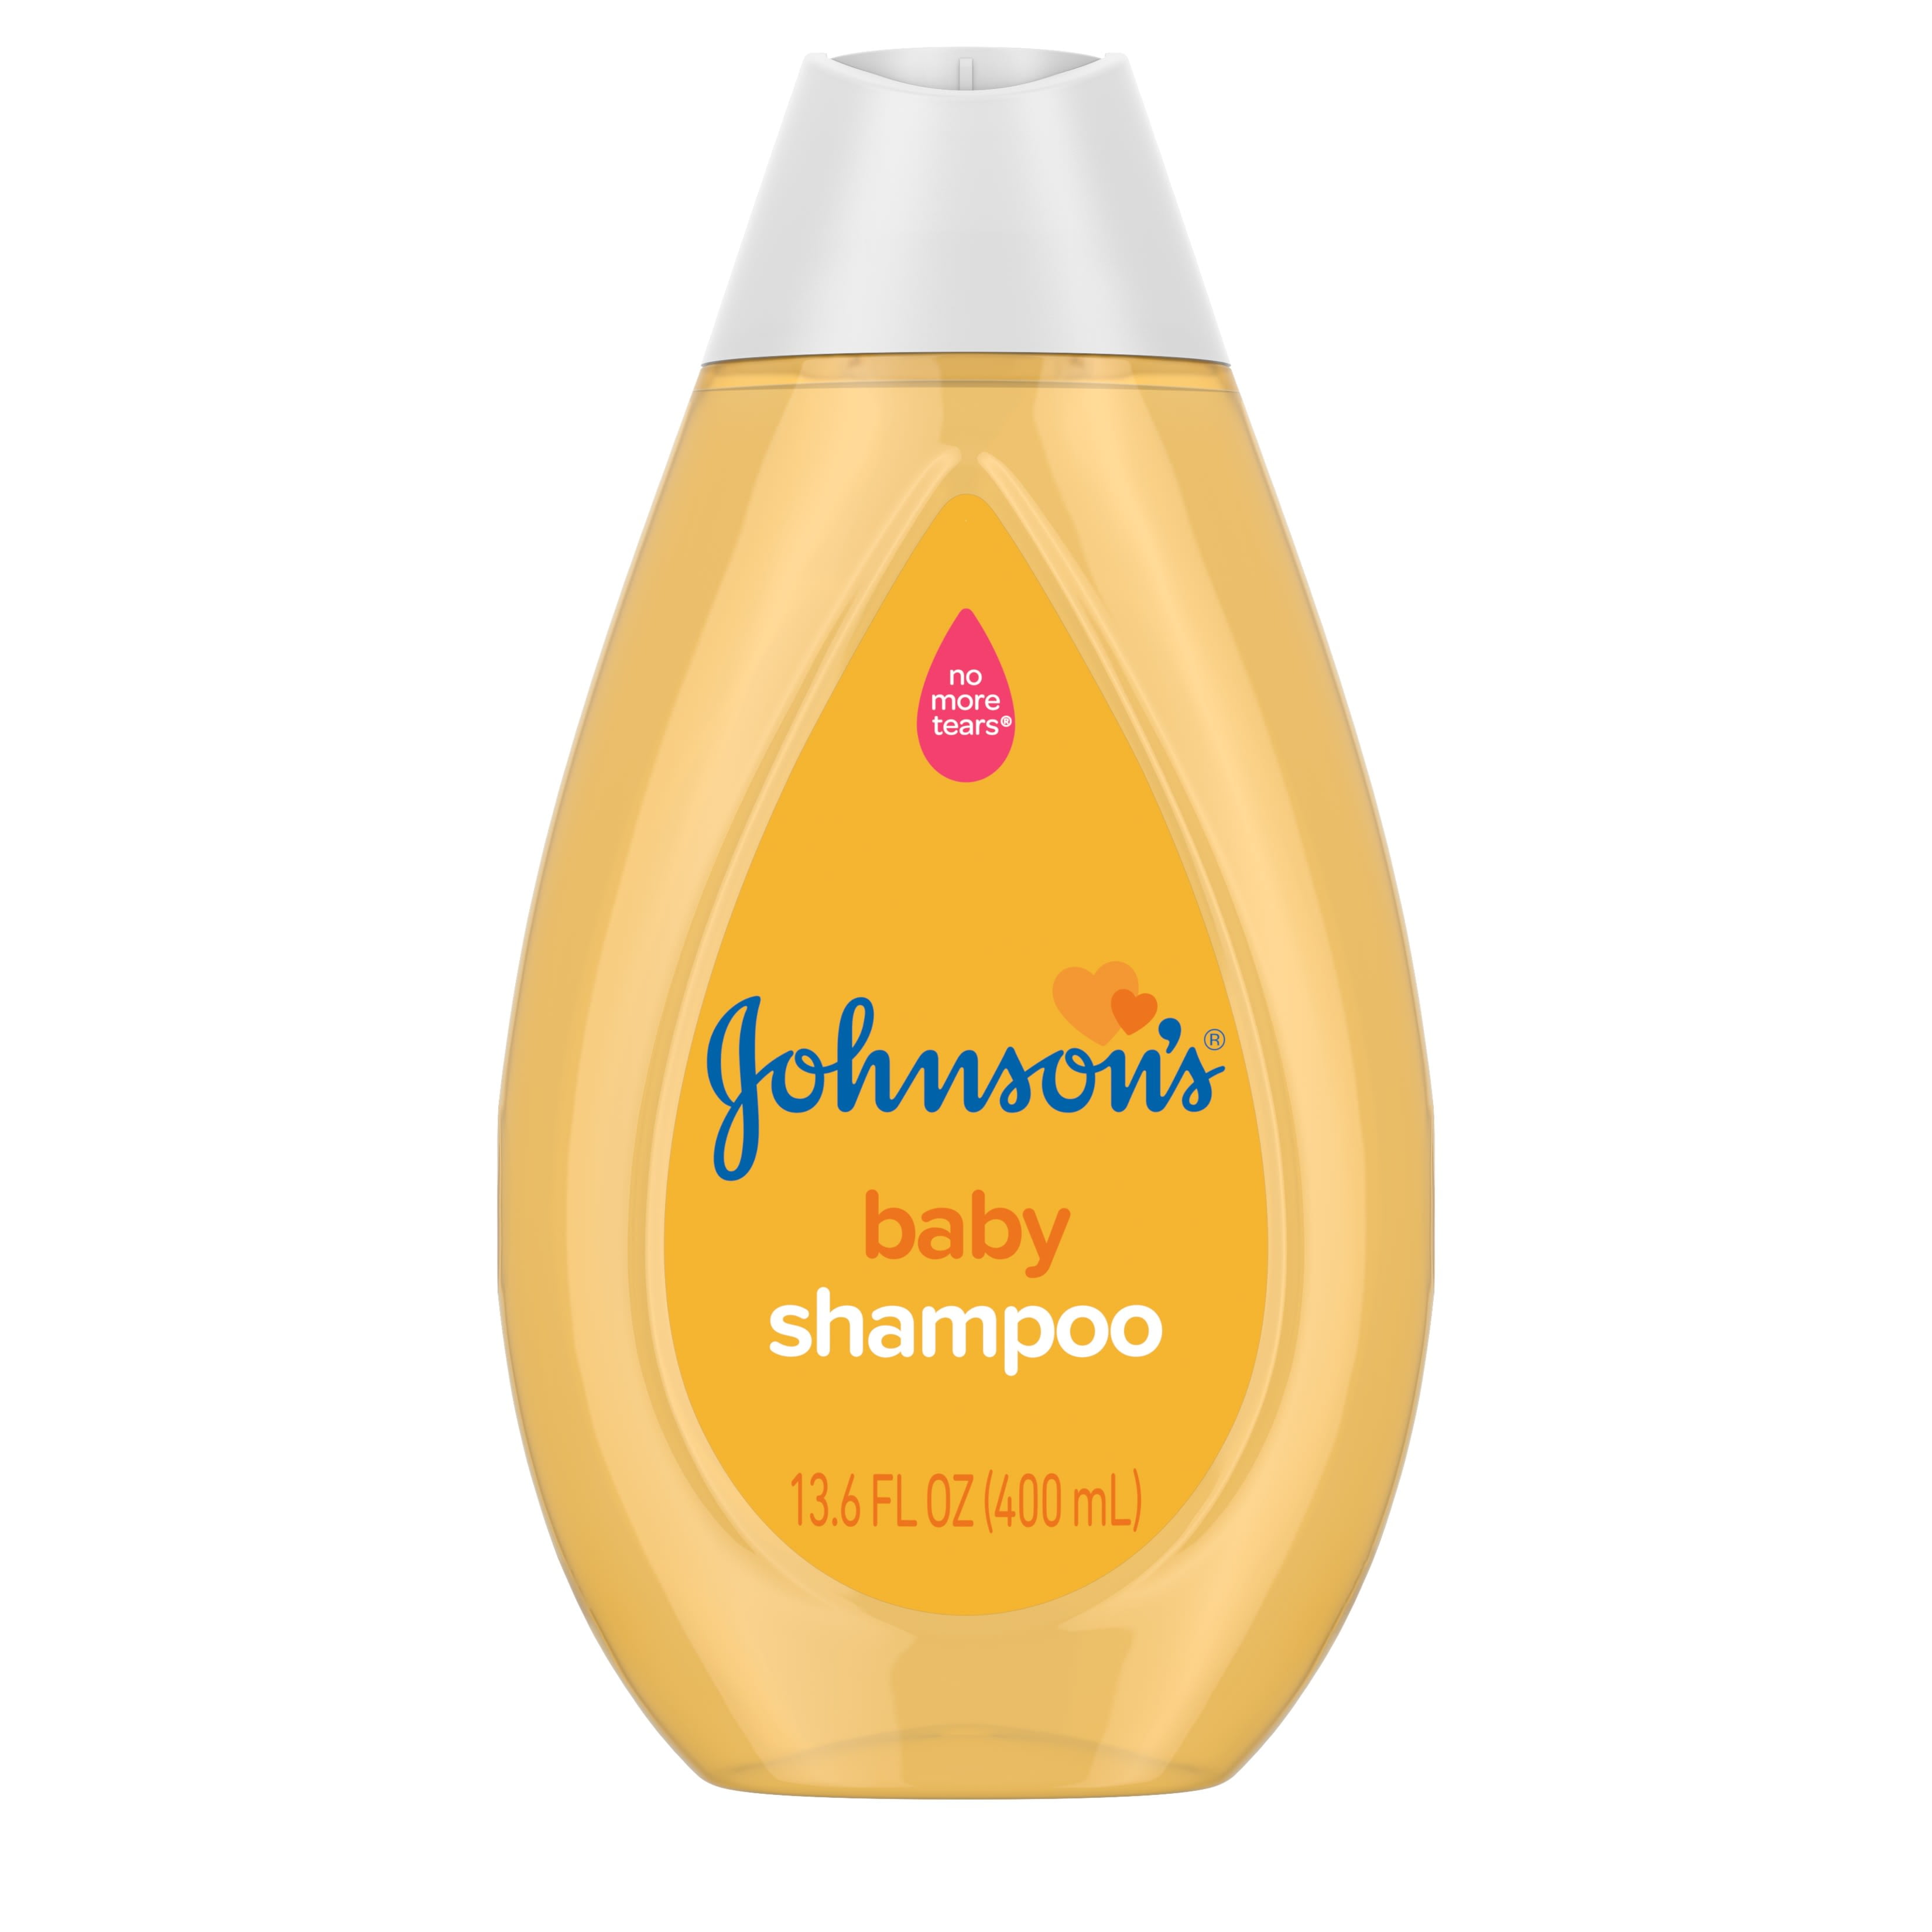 Johnson's Baby Shampoo, Tear-Free with Gentle Formula, 13.6 fl. oz